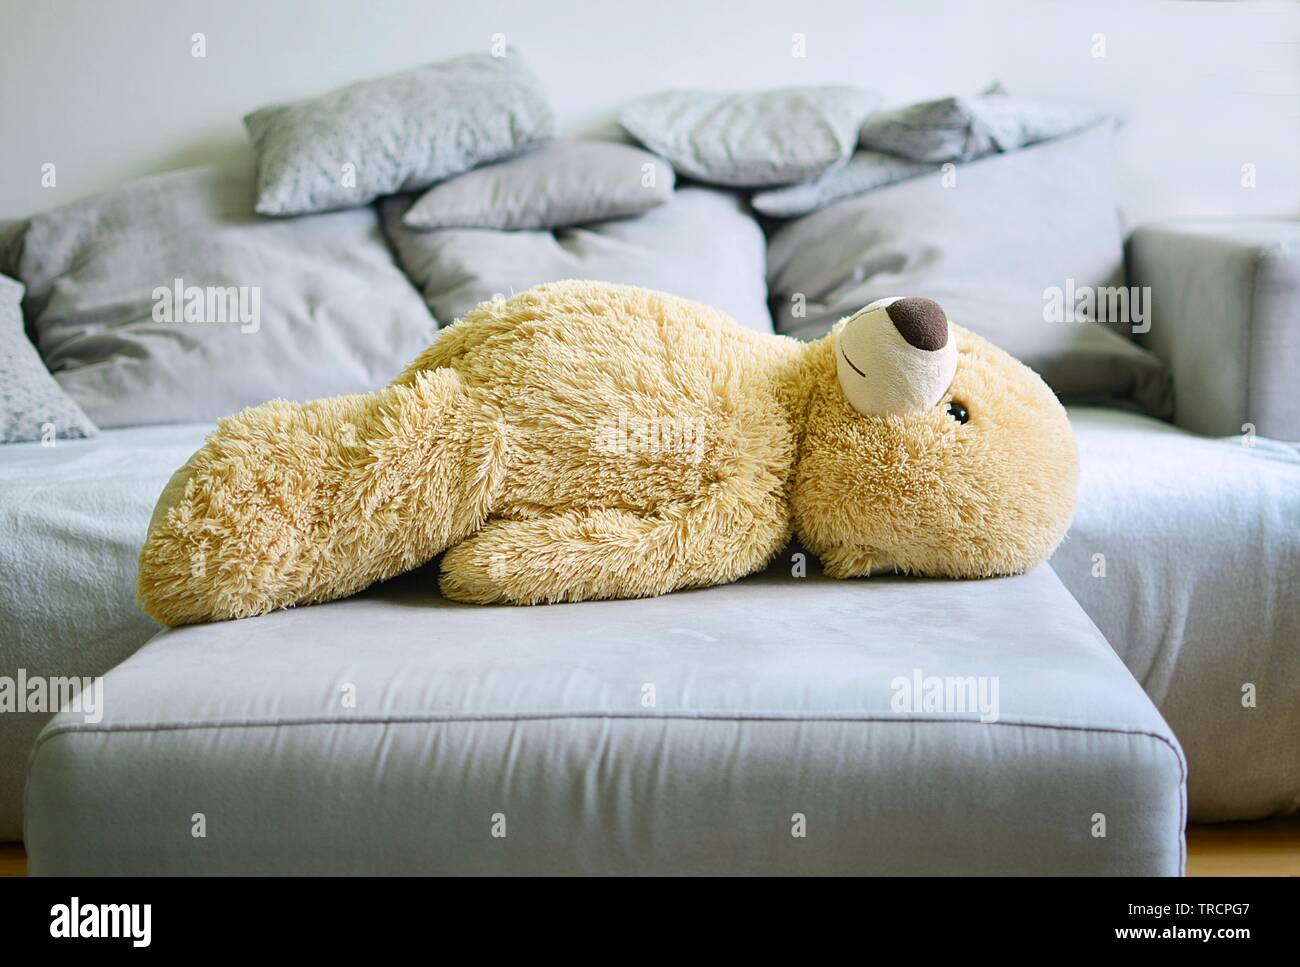 the big teddy bear lies on a sofa Stock Photo